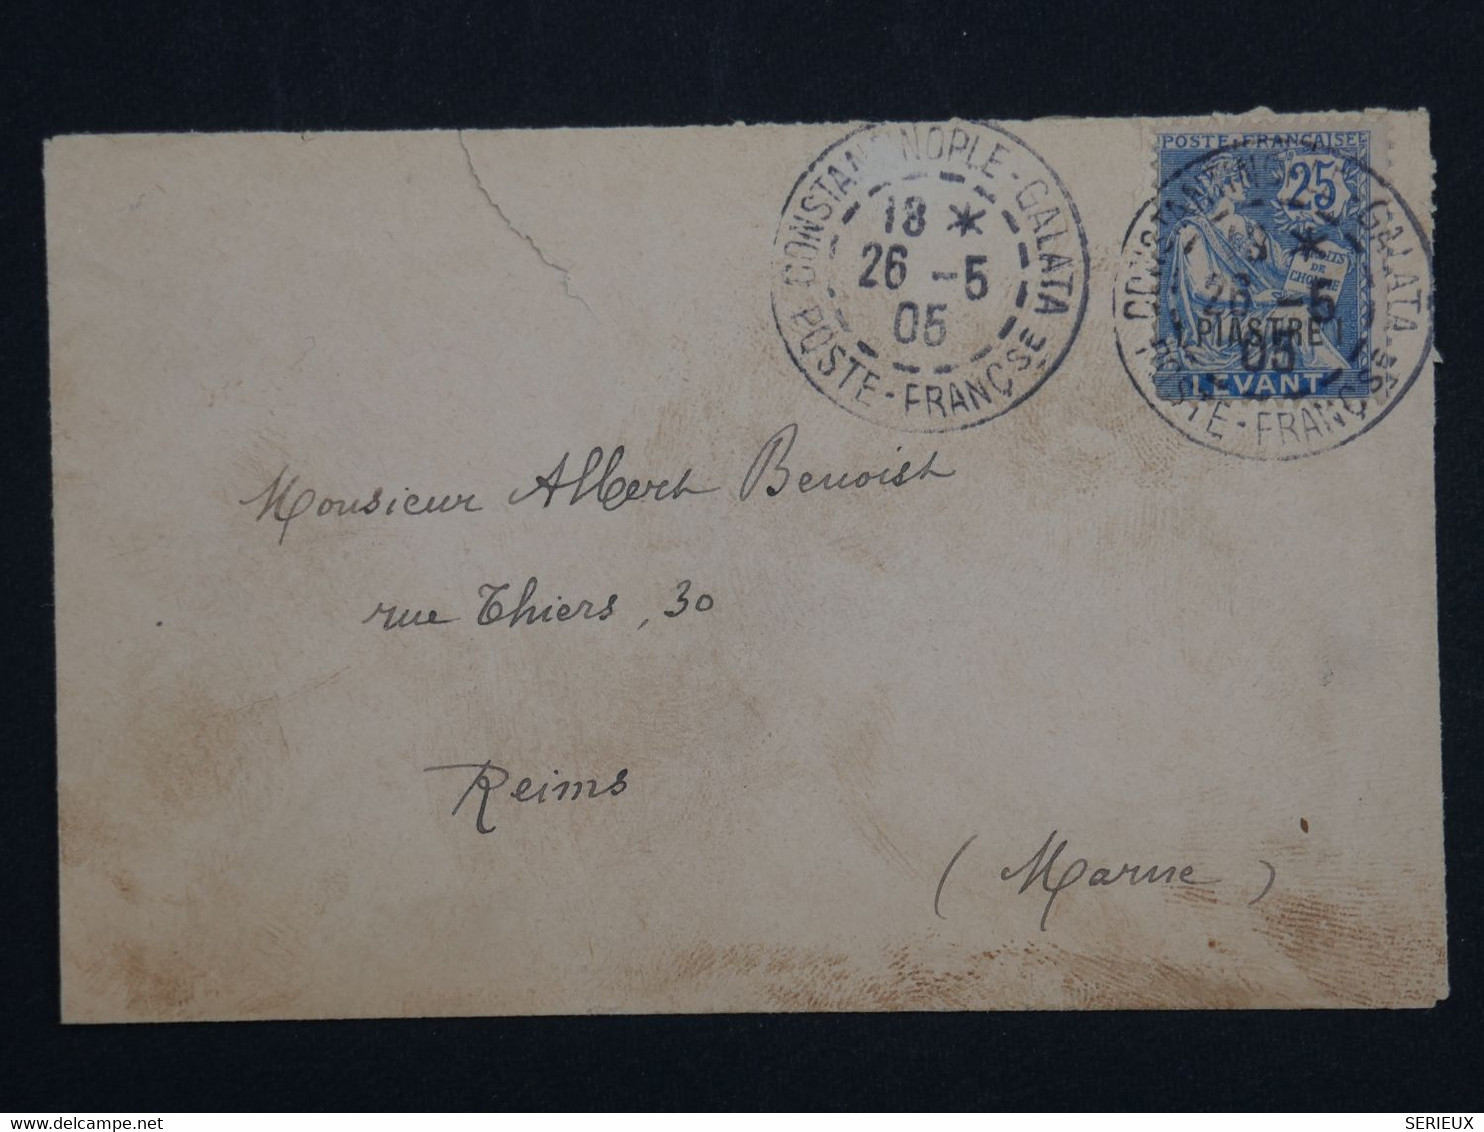 ¤ 21 LEVANT TURQUIE  BELLE LETTRE 1905 CONSTANTINOPLE A REIMS FRANCE  + + AFFR. PLAISANT - Lettres & Documents